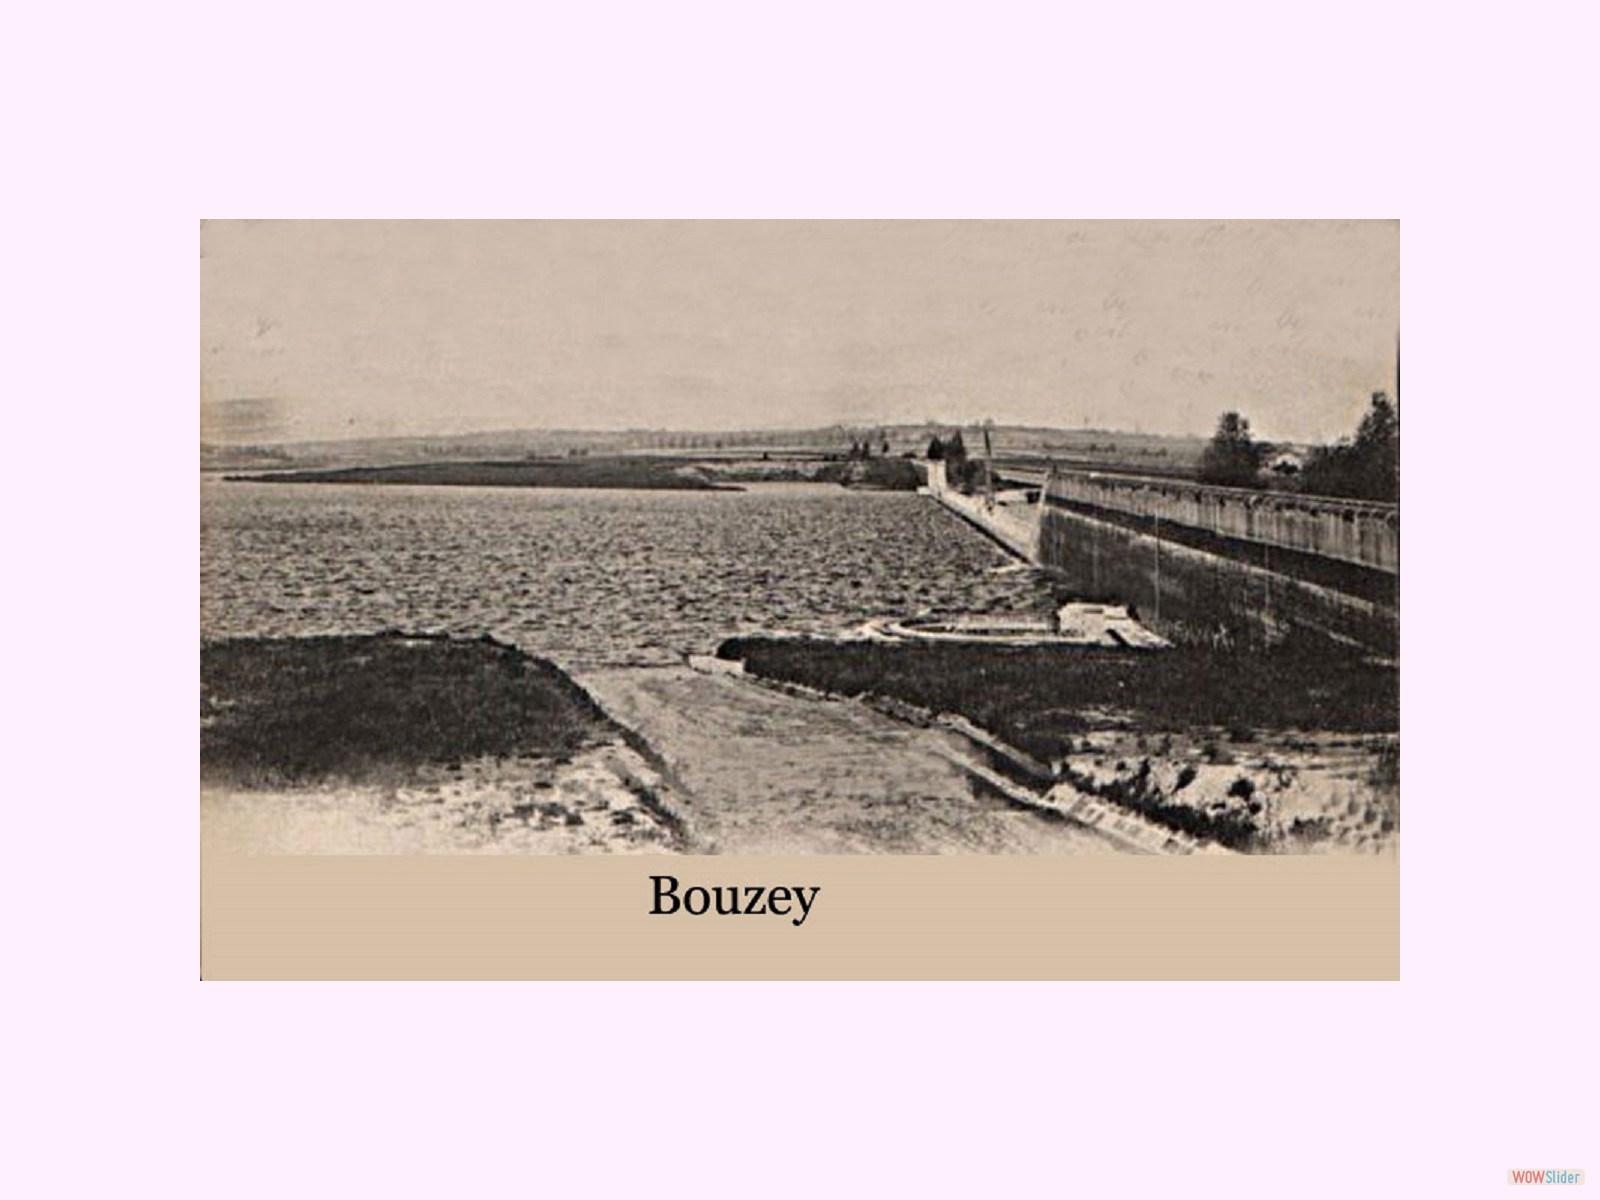 Bouzey avant rupture de digue 02